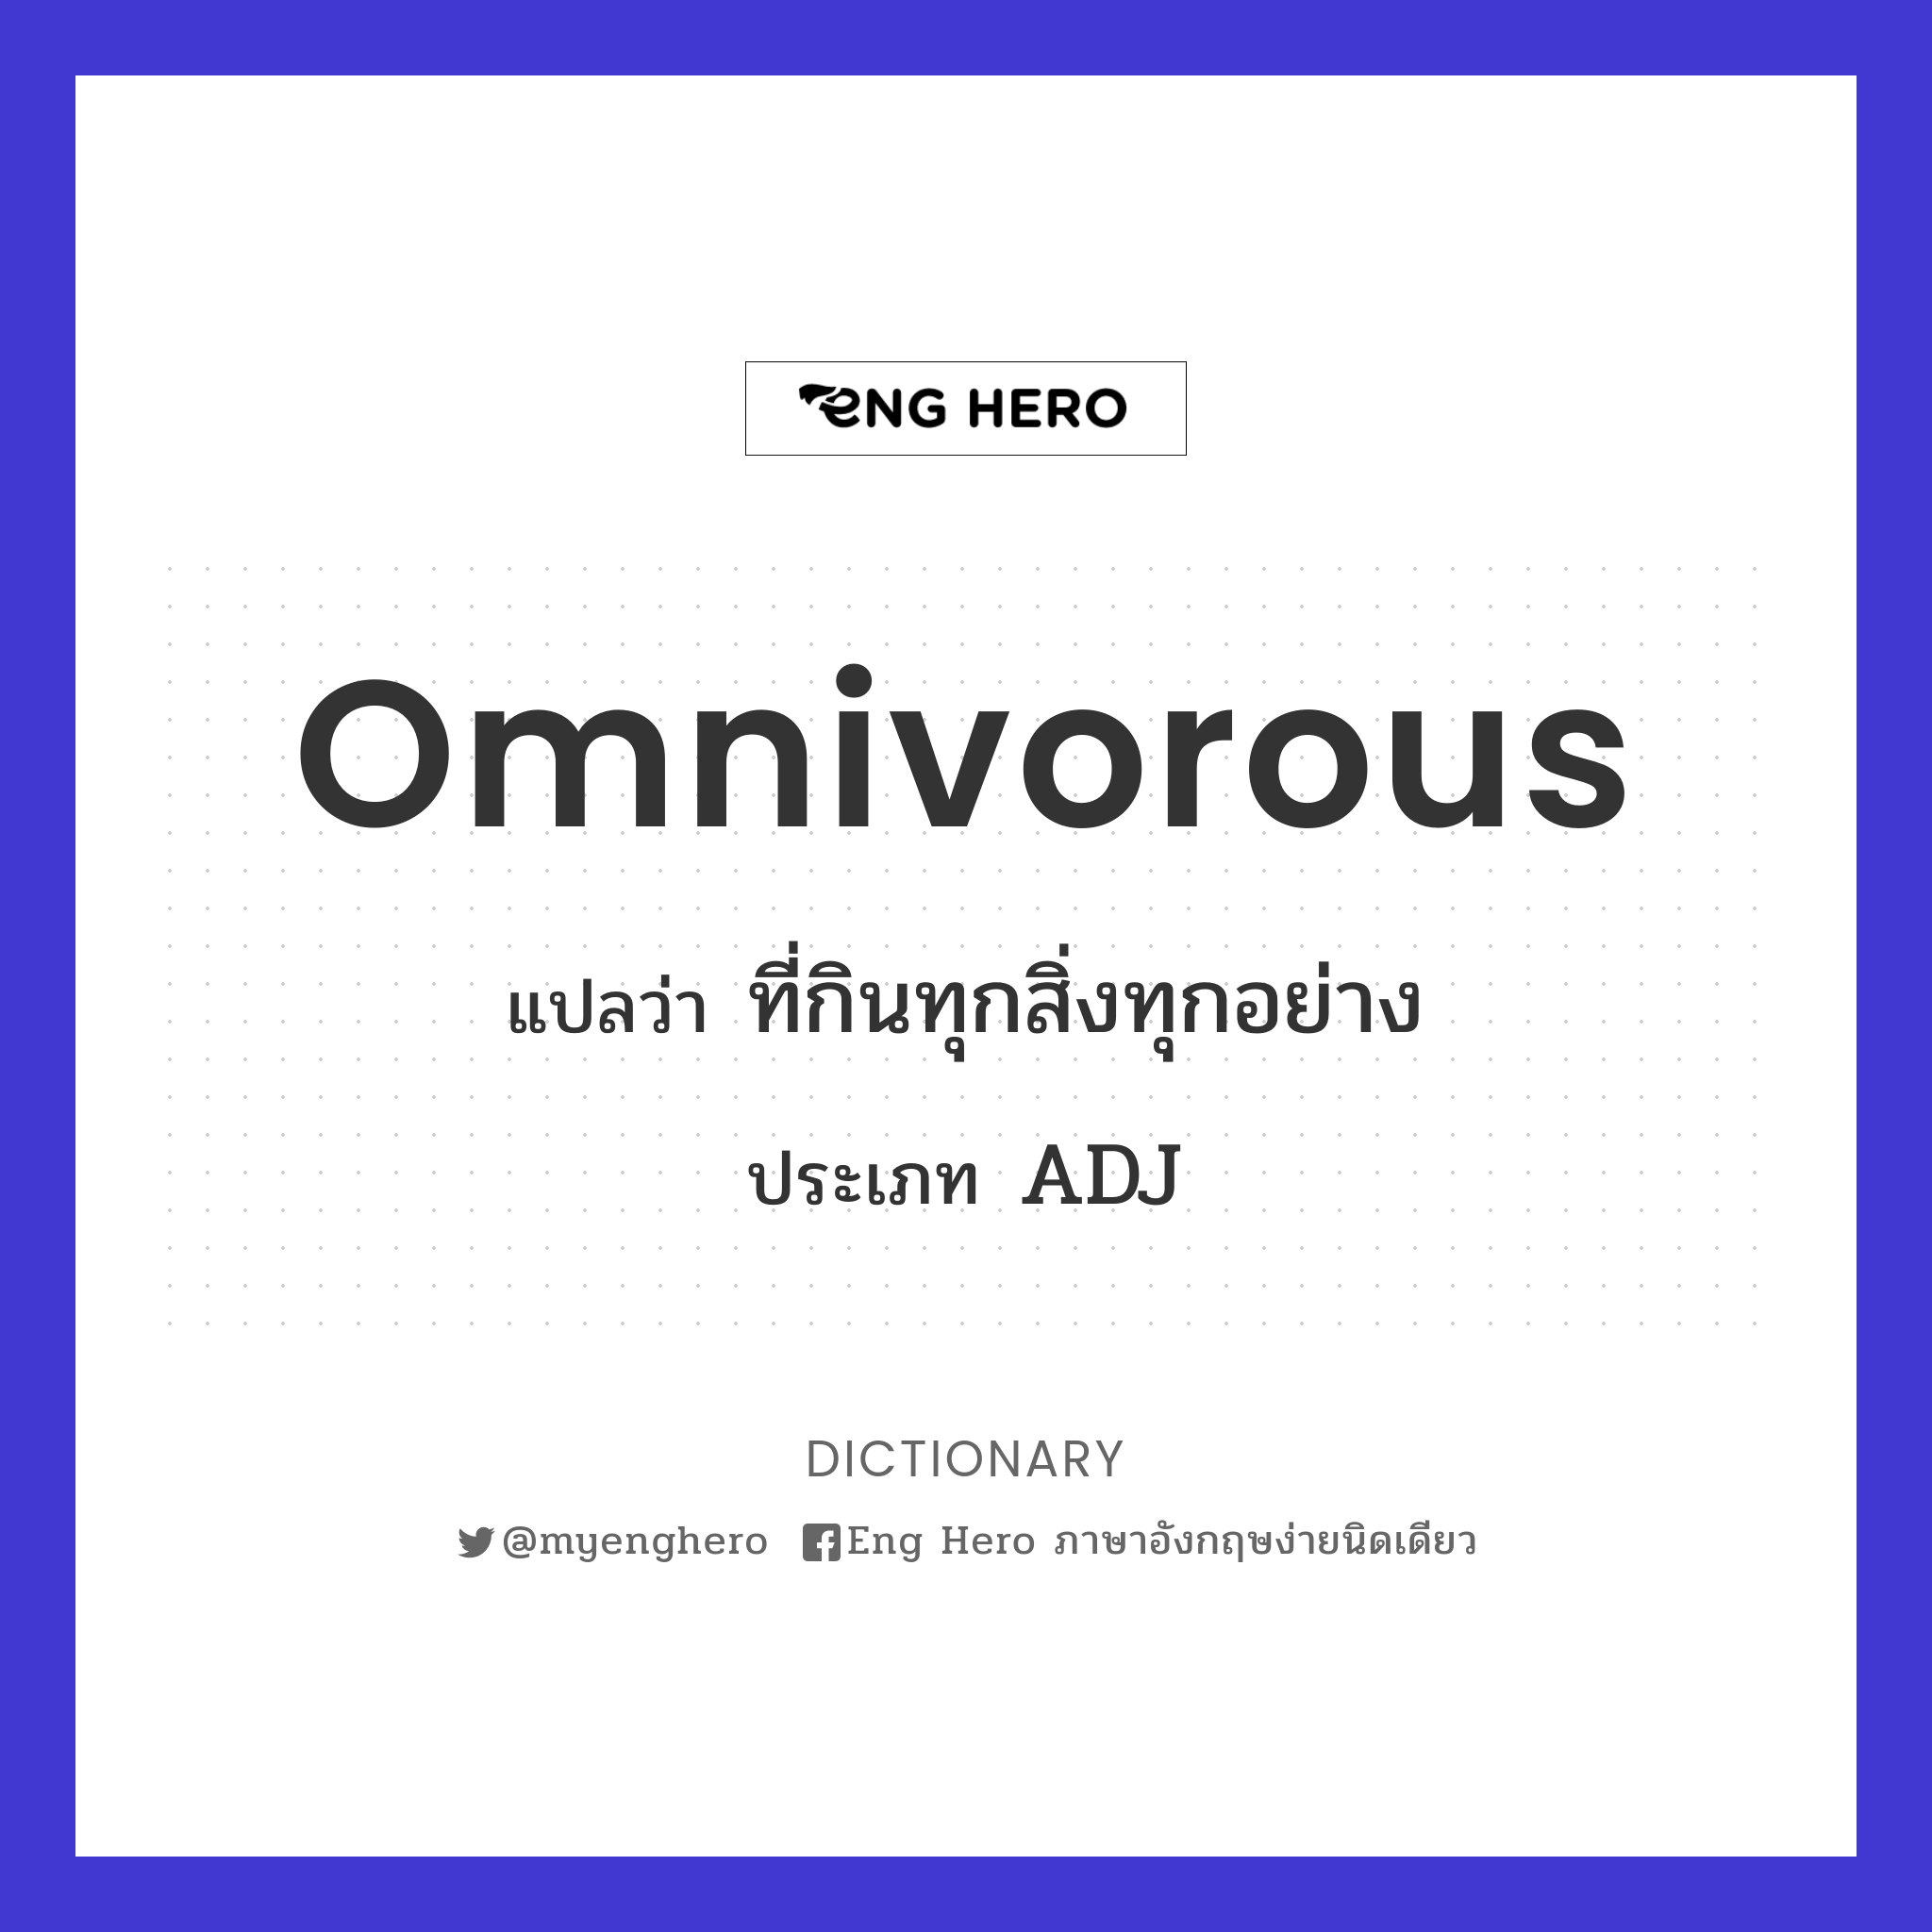 omnivorous